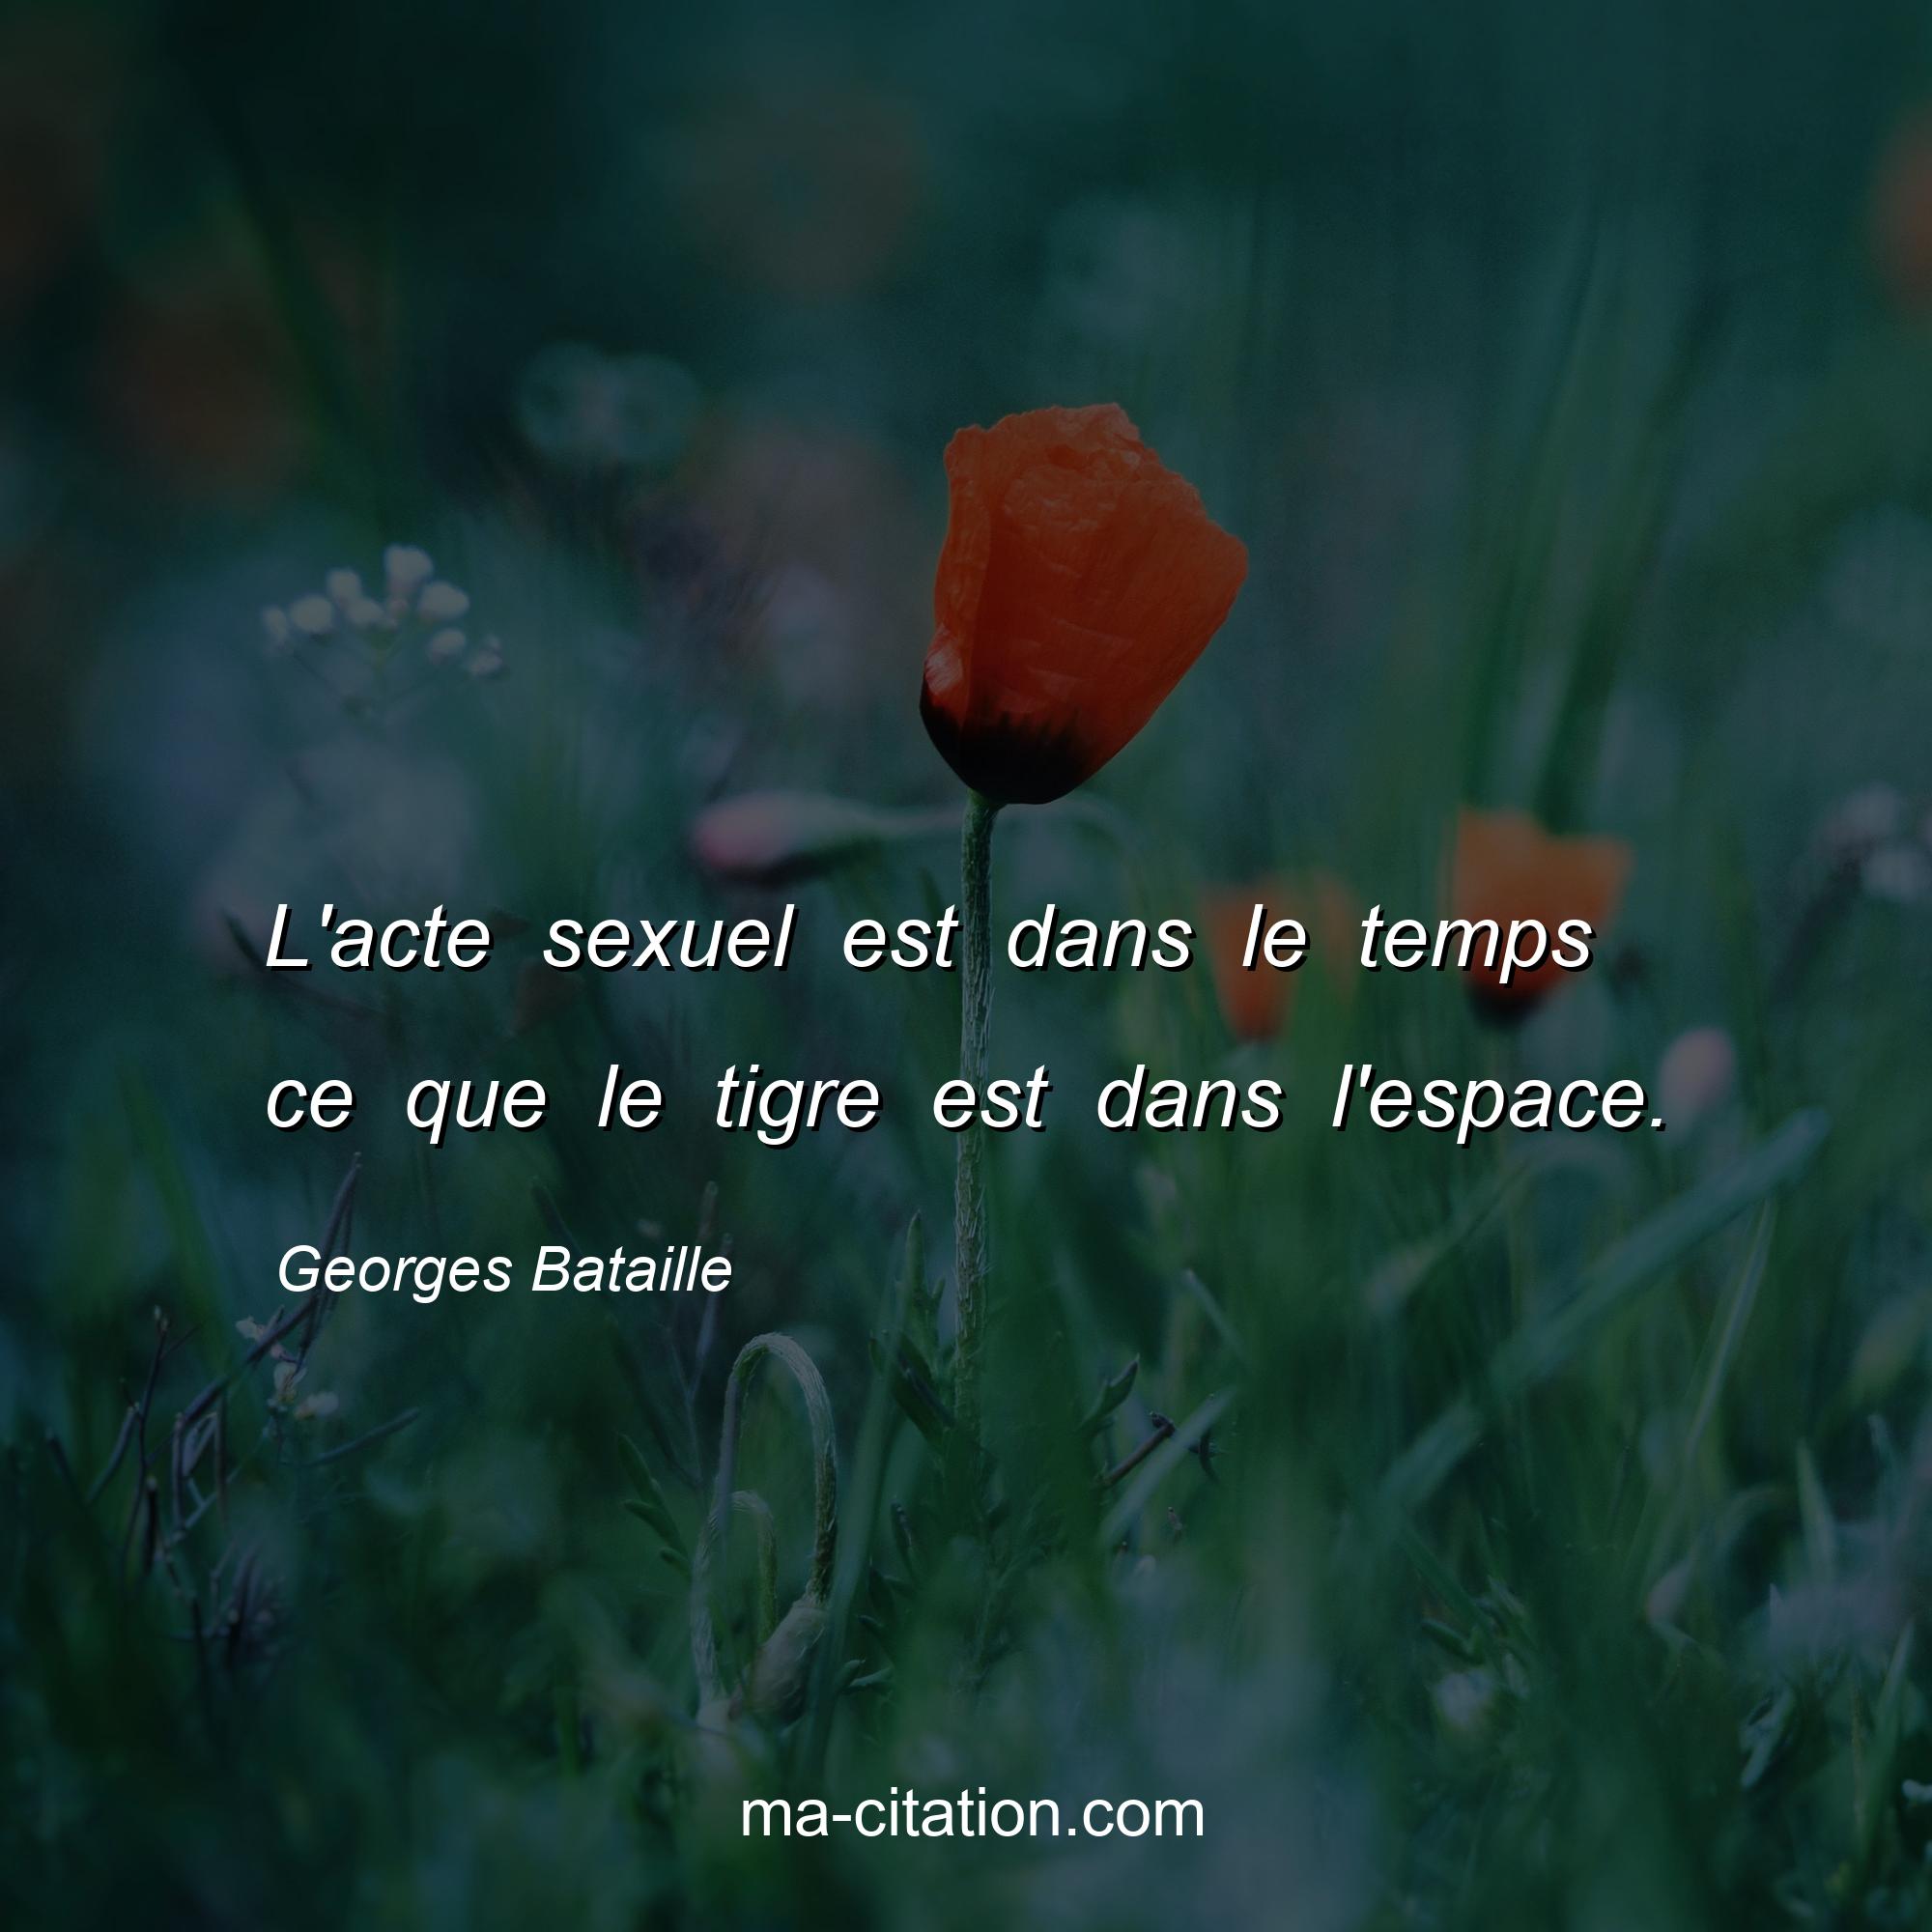 Georges Bataille : L'acte sexuel est dans le temps ce que le tigre est dans l'espace.